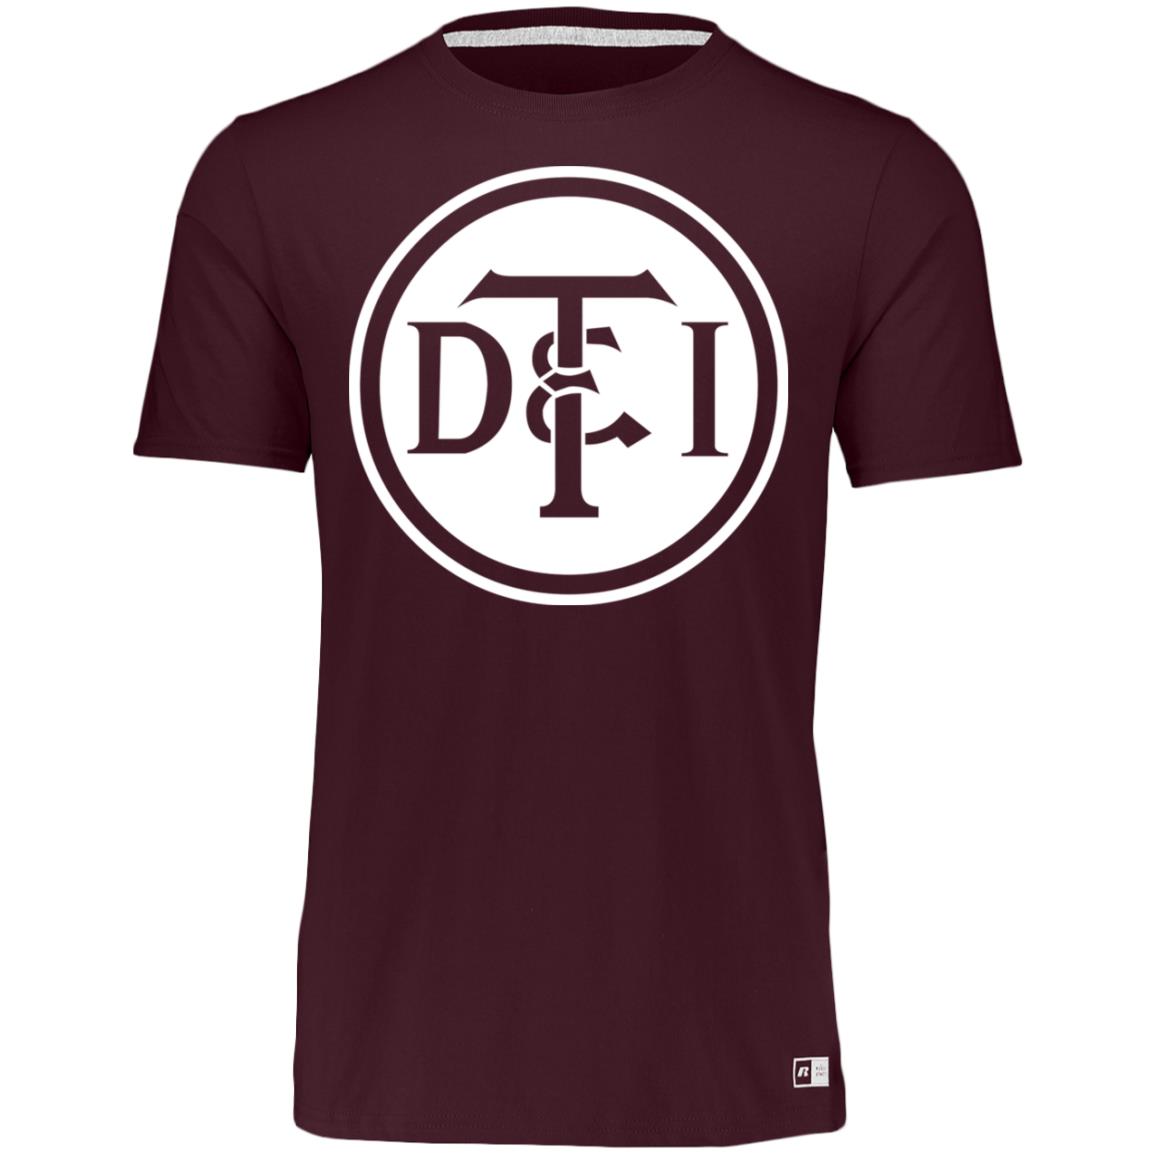 Detroit & Toledo Ironton [DT&I] Vintage White Logo Essential Dri-Power Tee